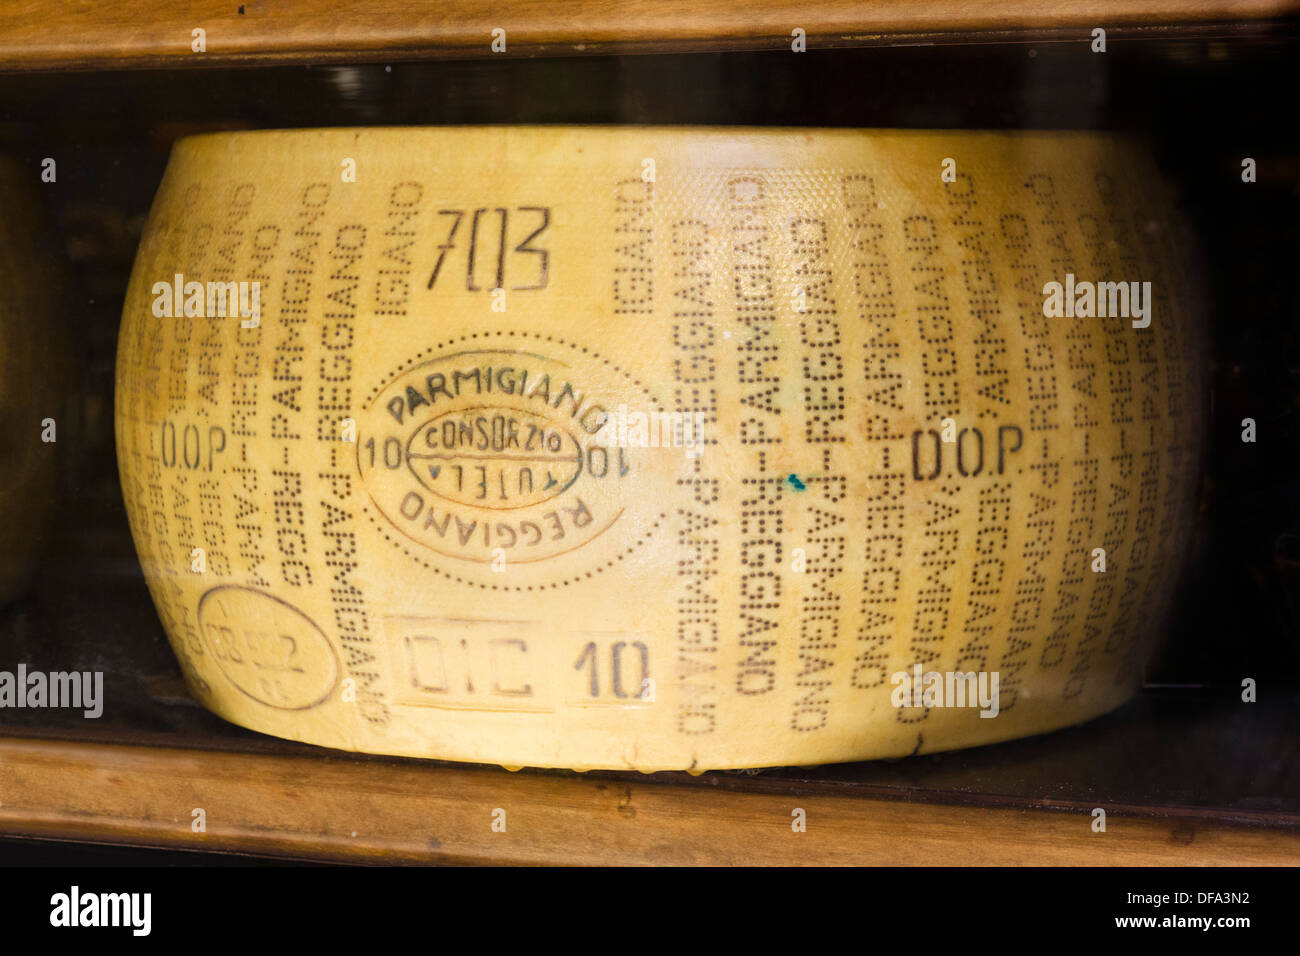 Rueda de queso Parmigiano Reggiano, Reggio Emilia, Emilia Romagna, Italia Foto de stock